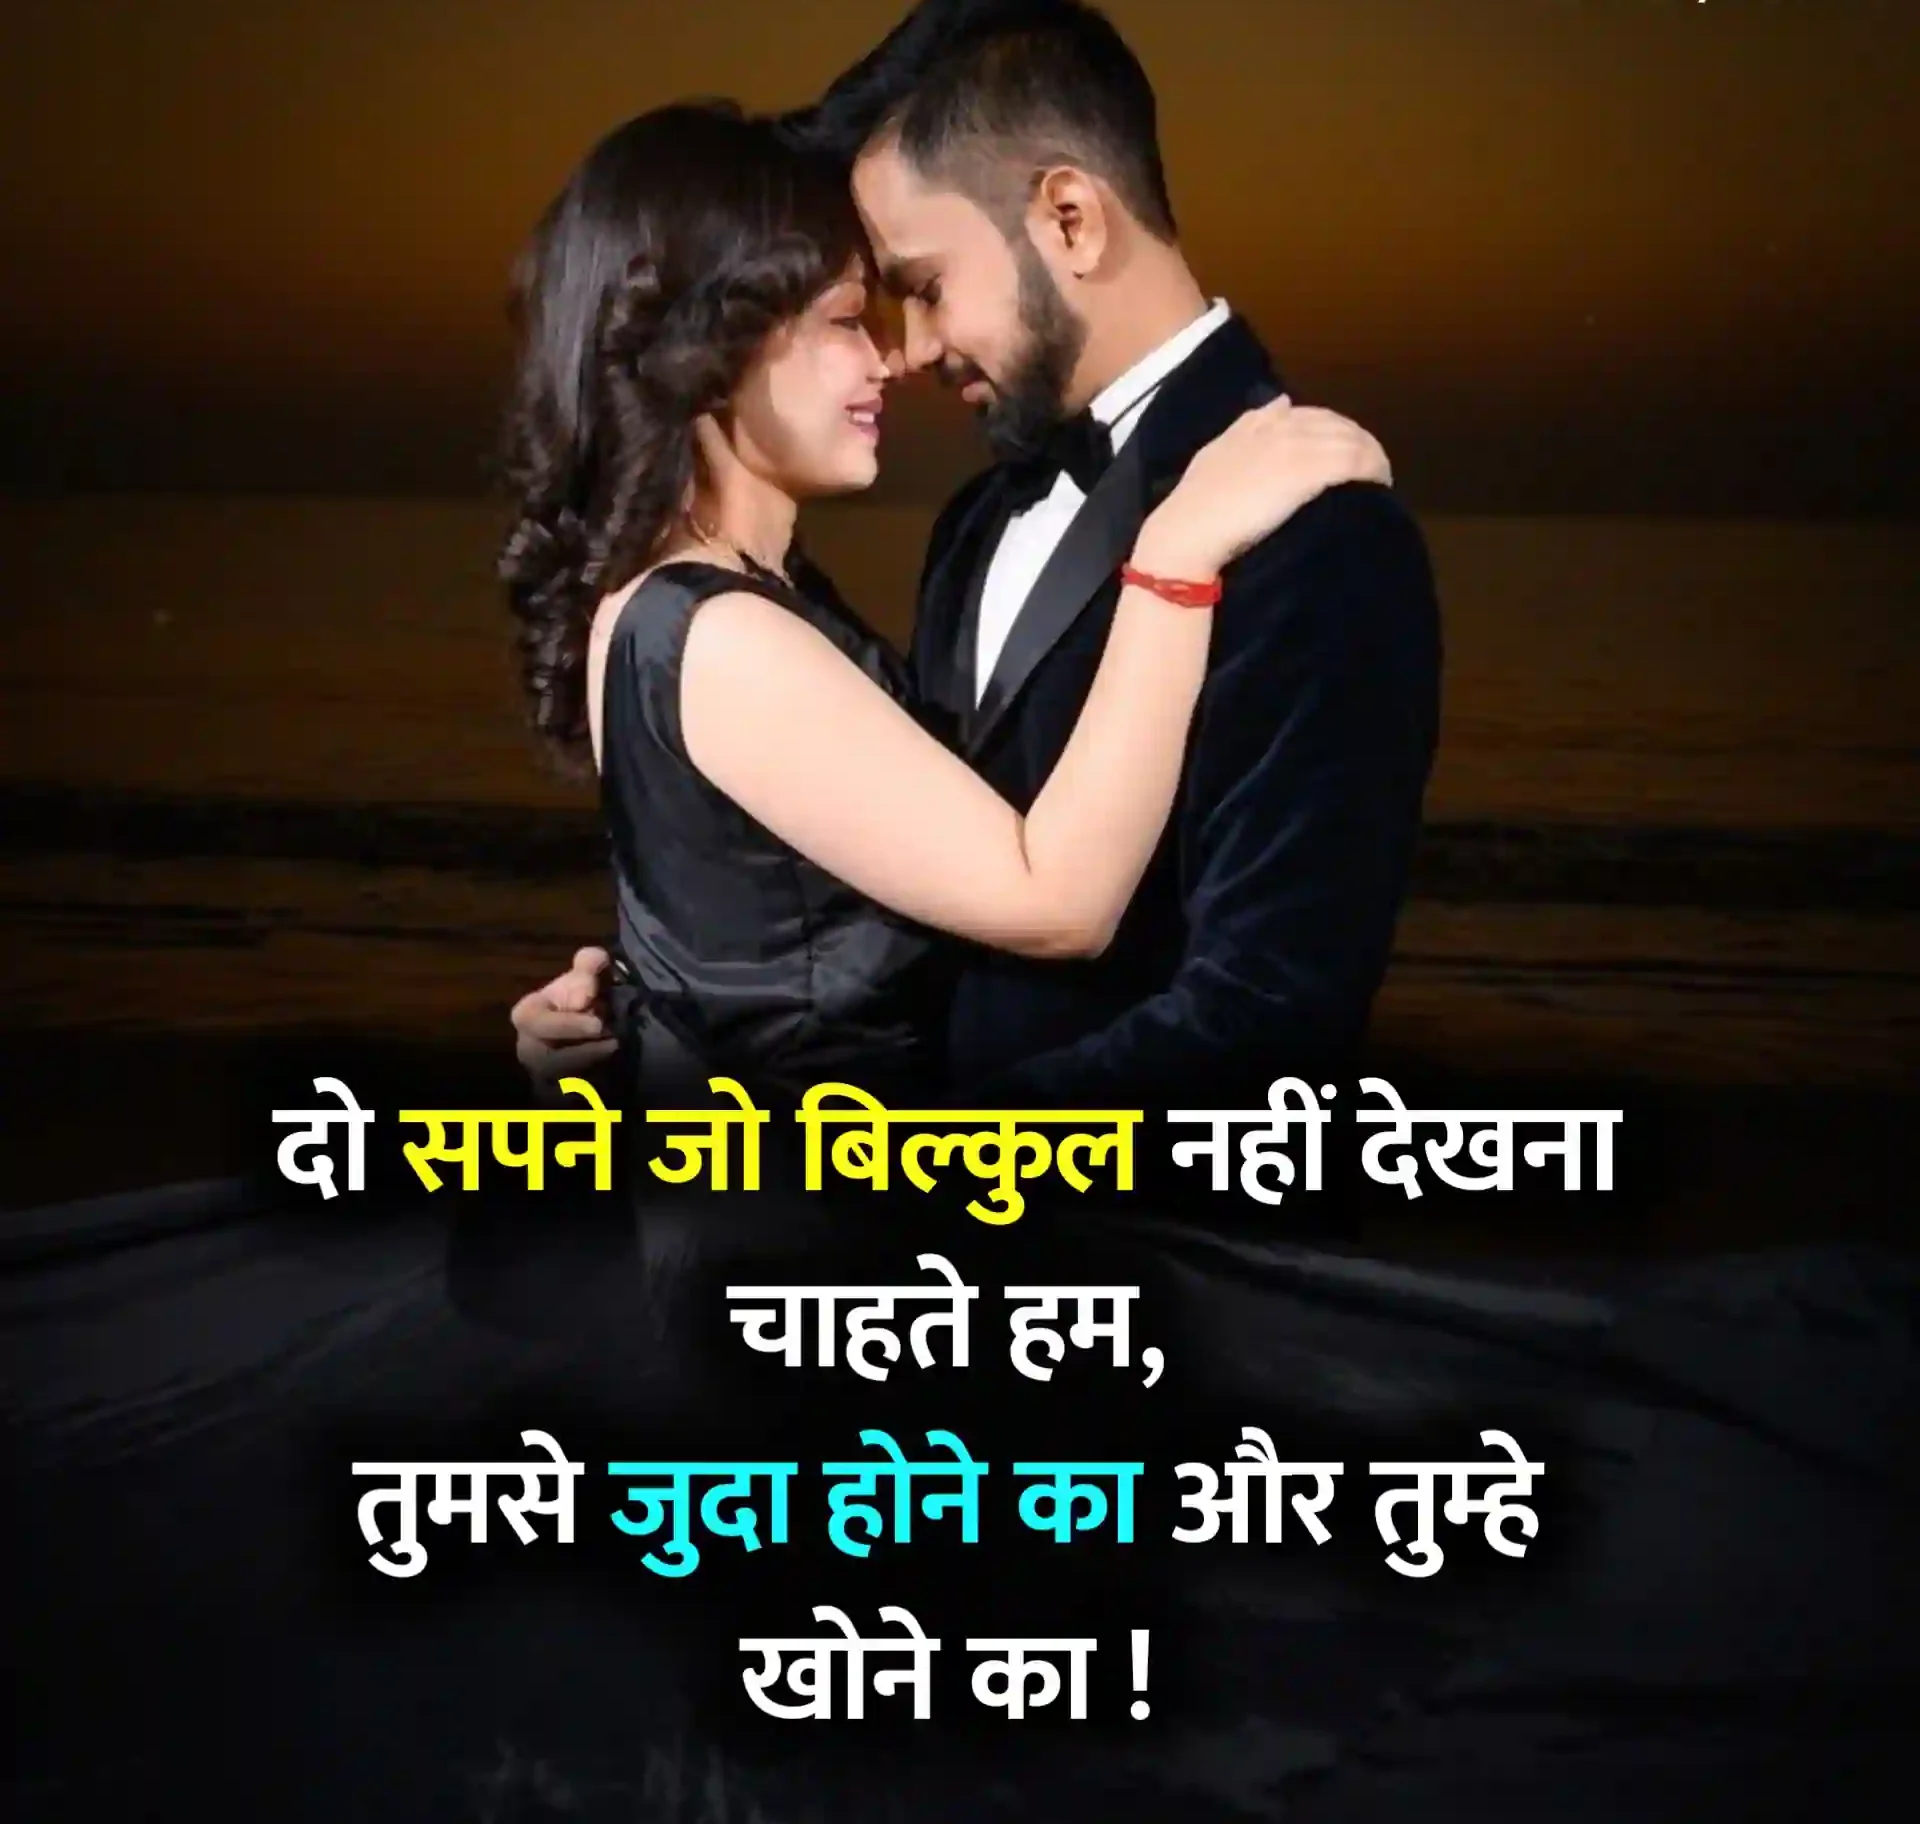 Love Status in Hindi Image